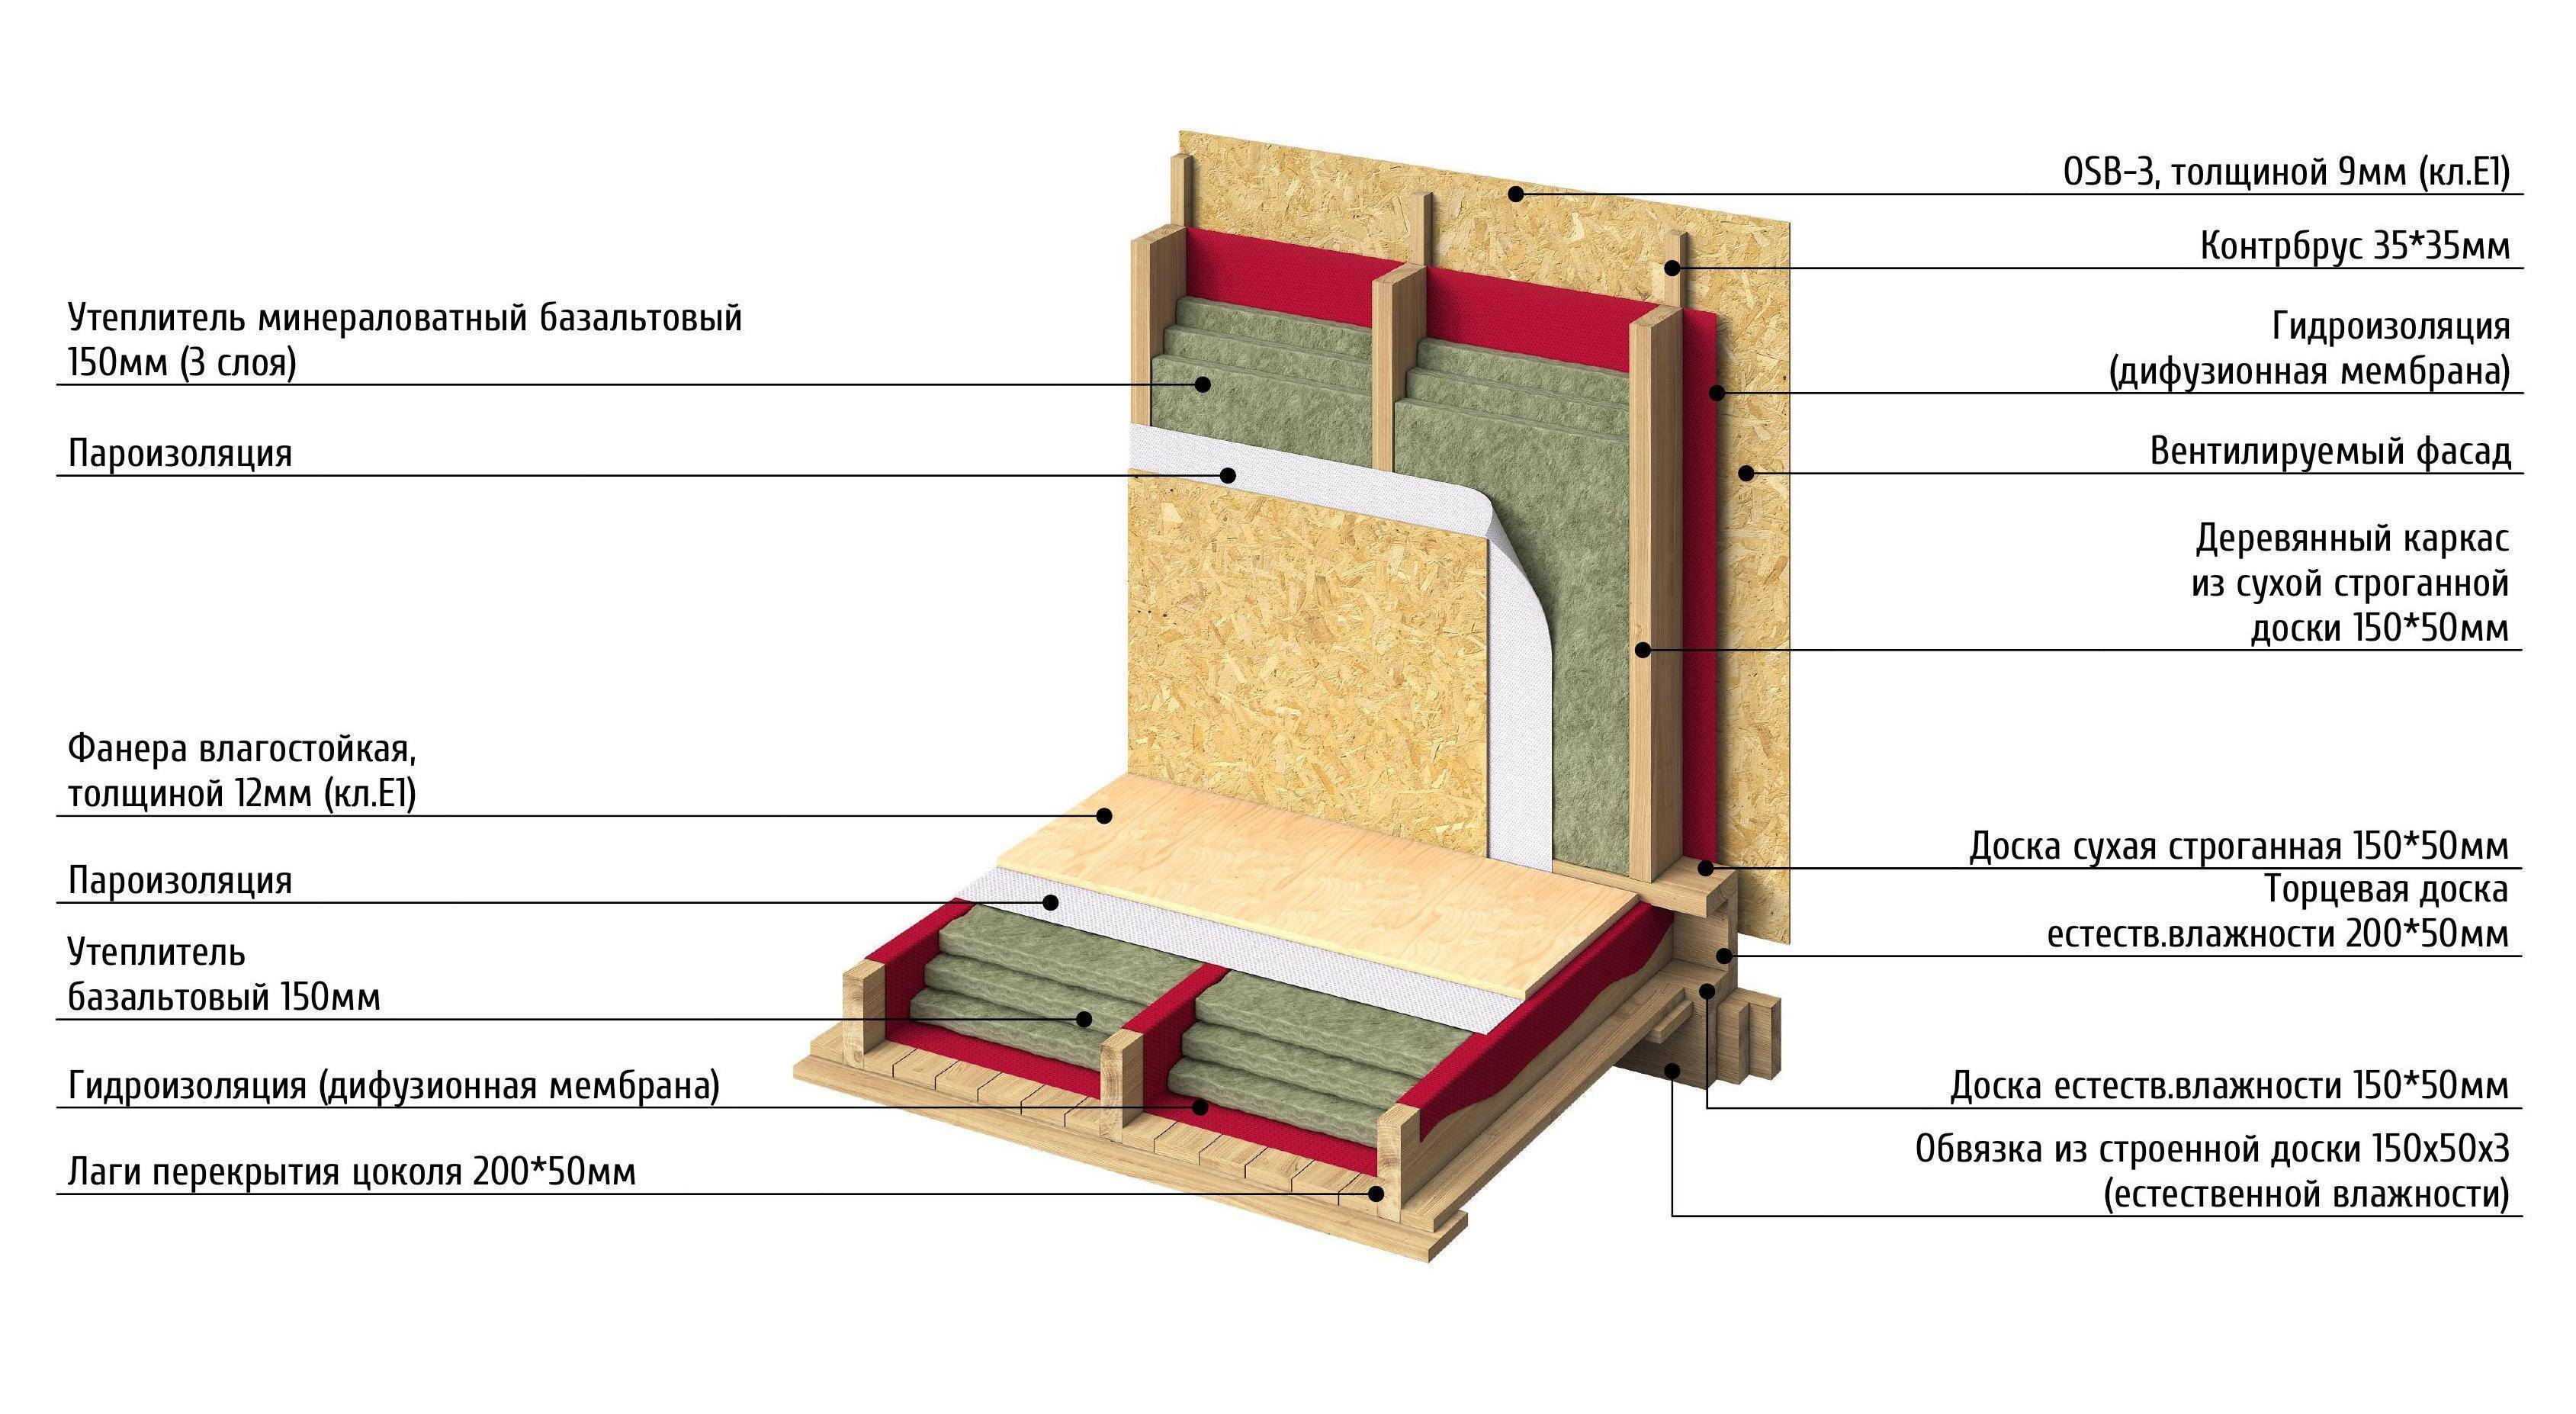 Технология утепления стен базальтовой ватой